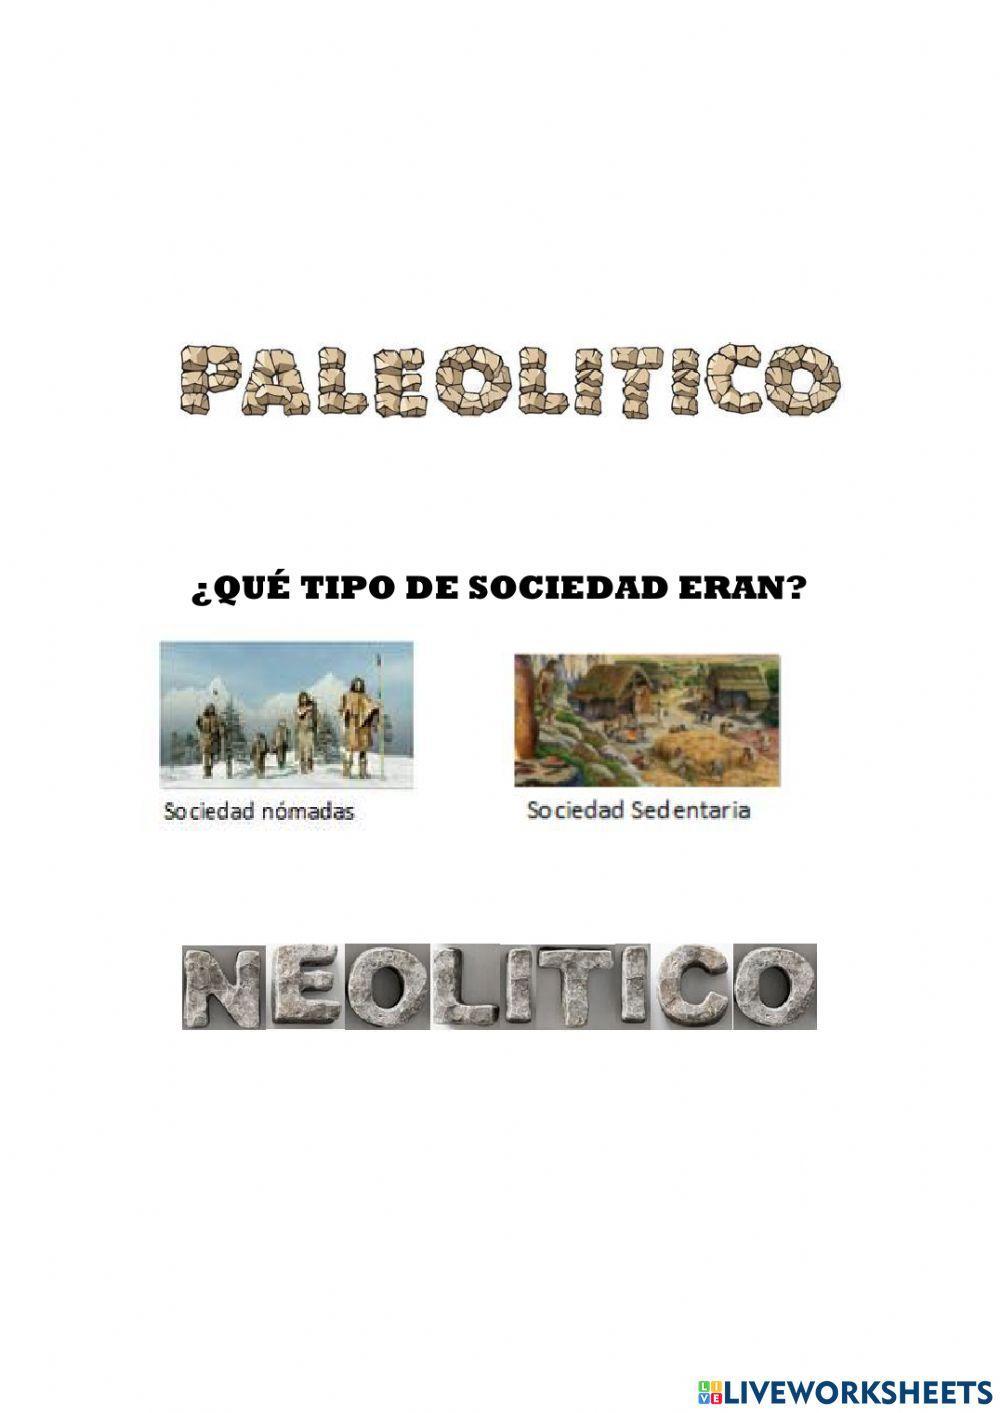 Paleolitico vs neolitico